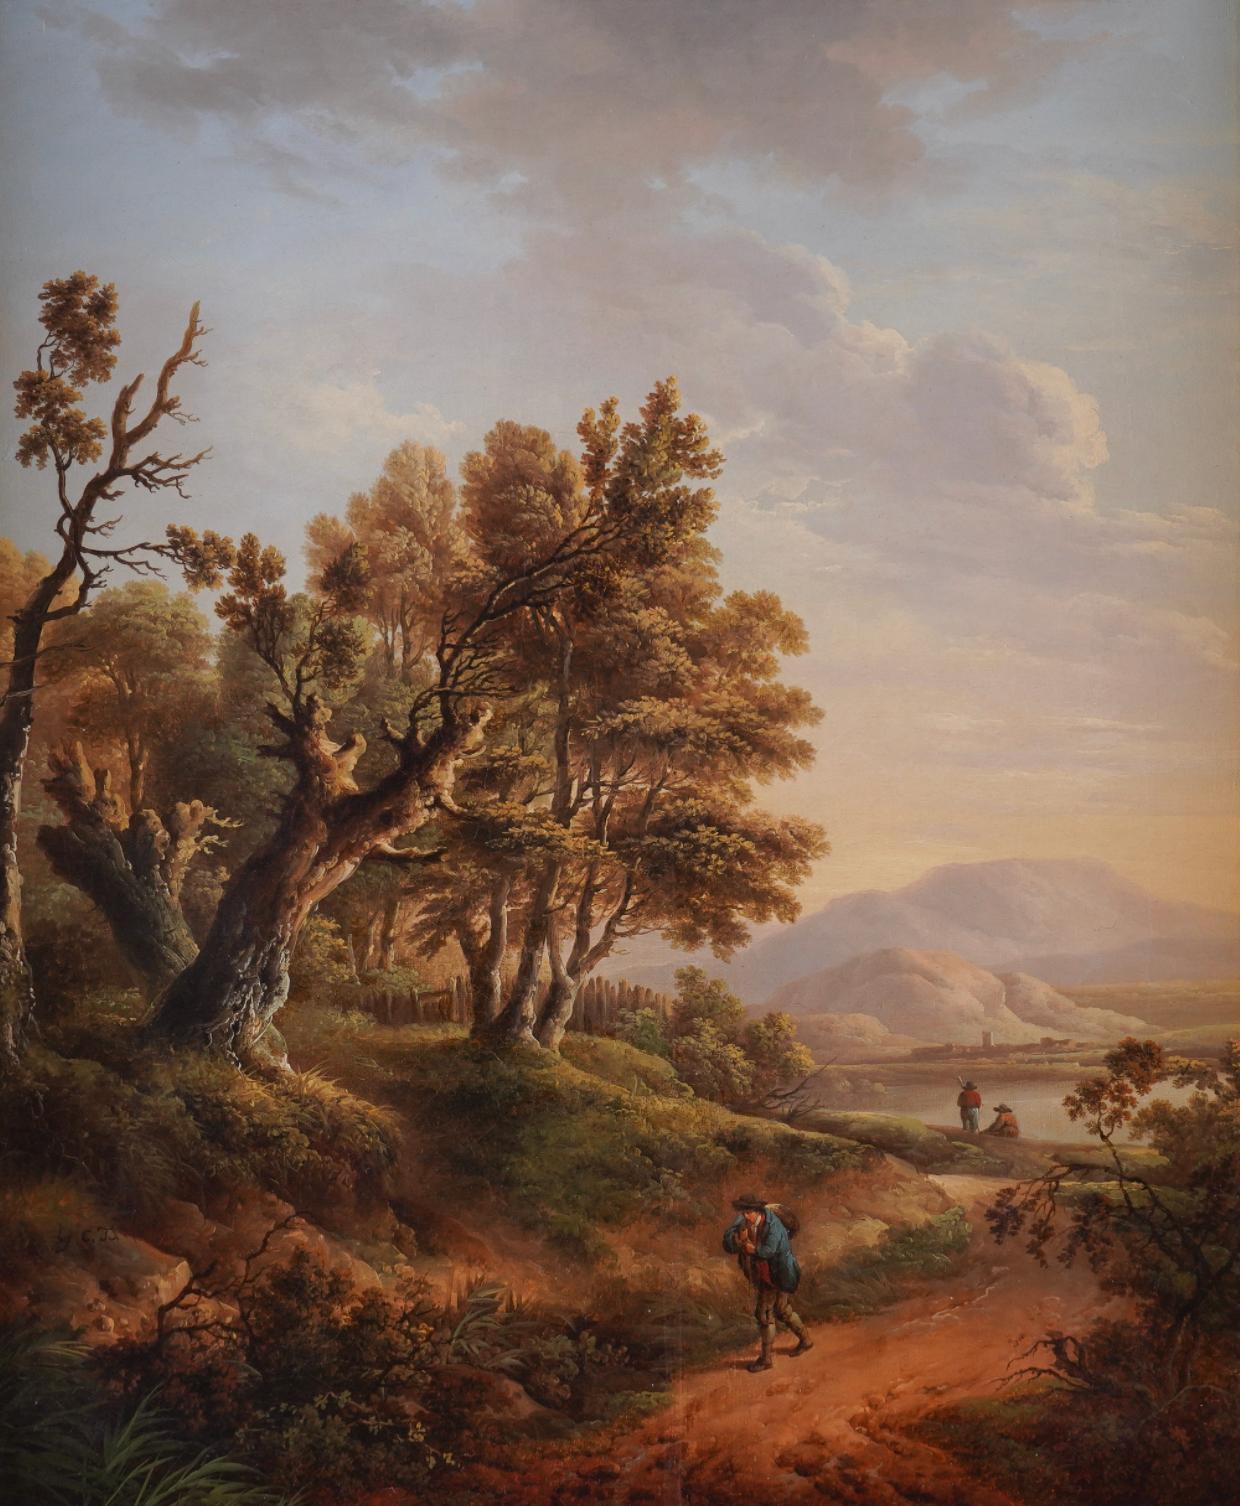 Eine hölzerne Landschaft mit einem Reisenden auf einem Weg – Painting von Charles Towne